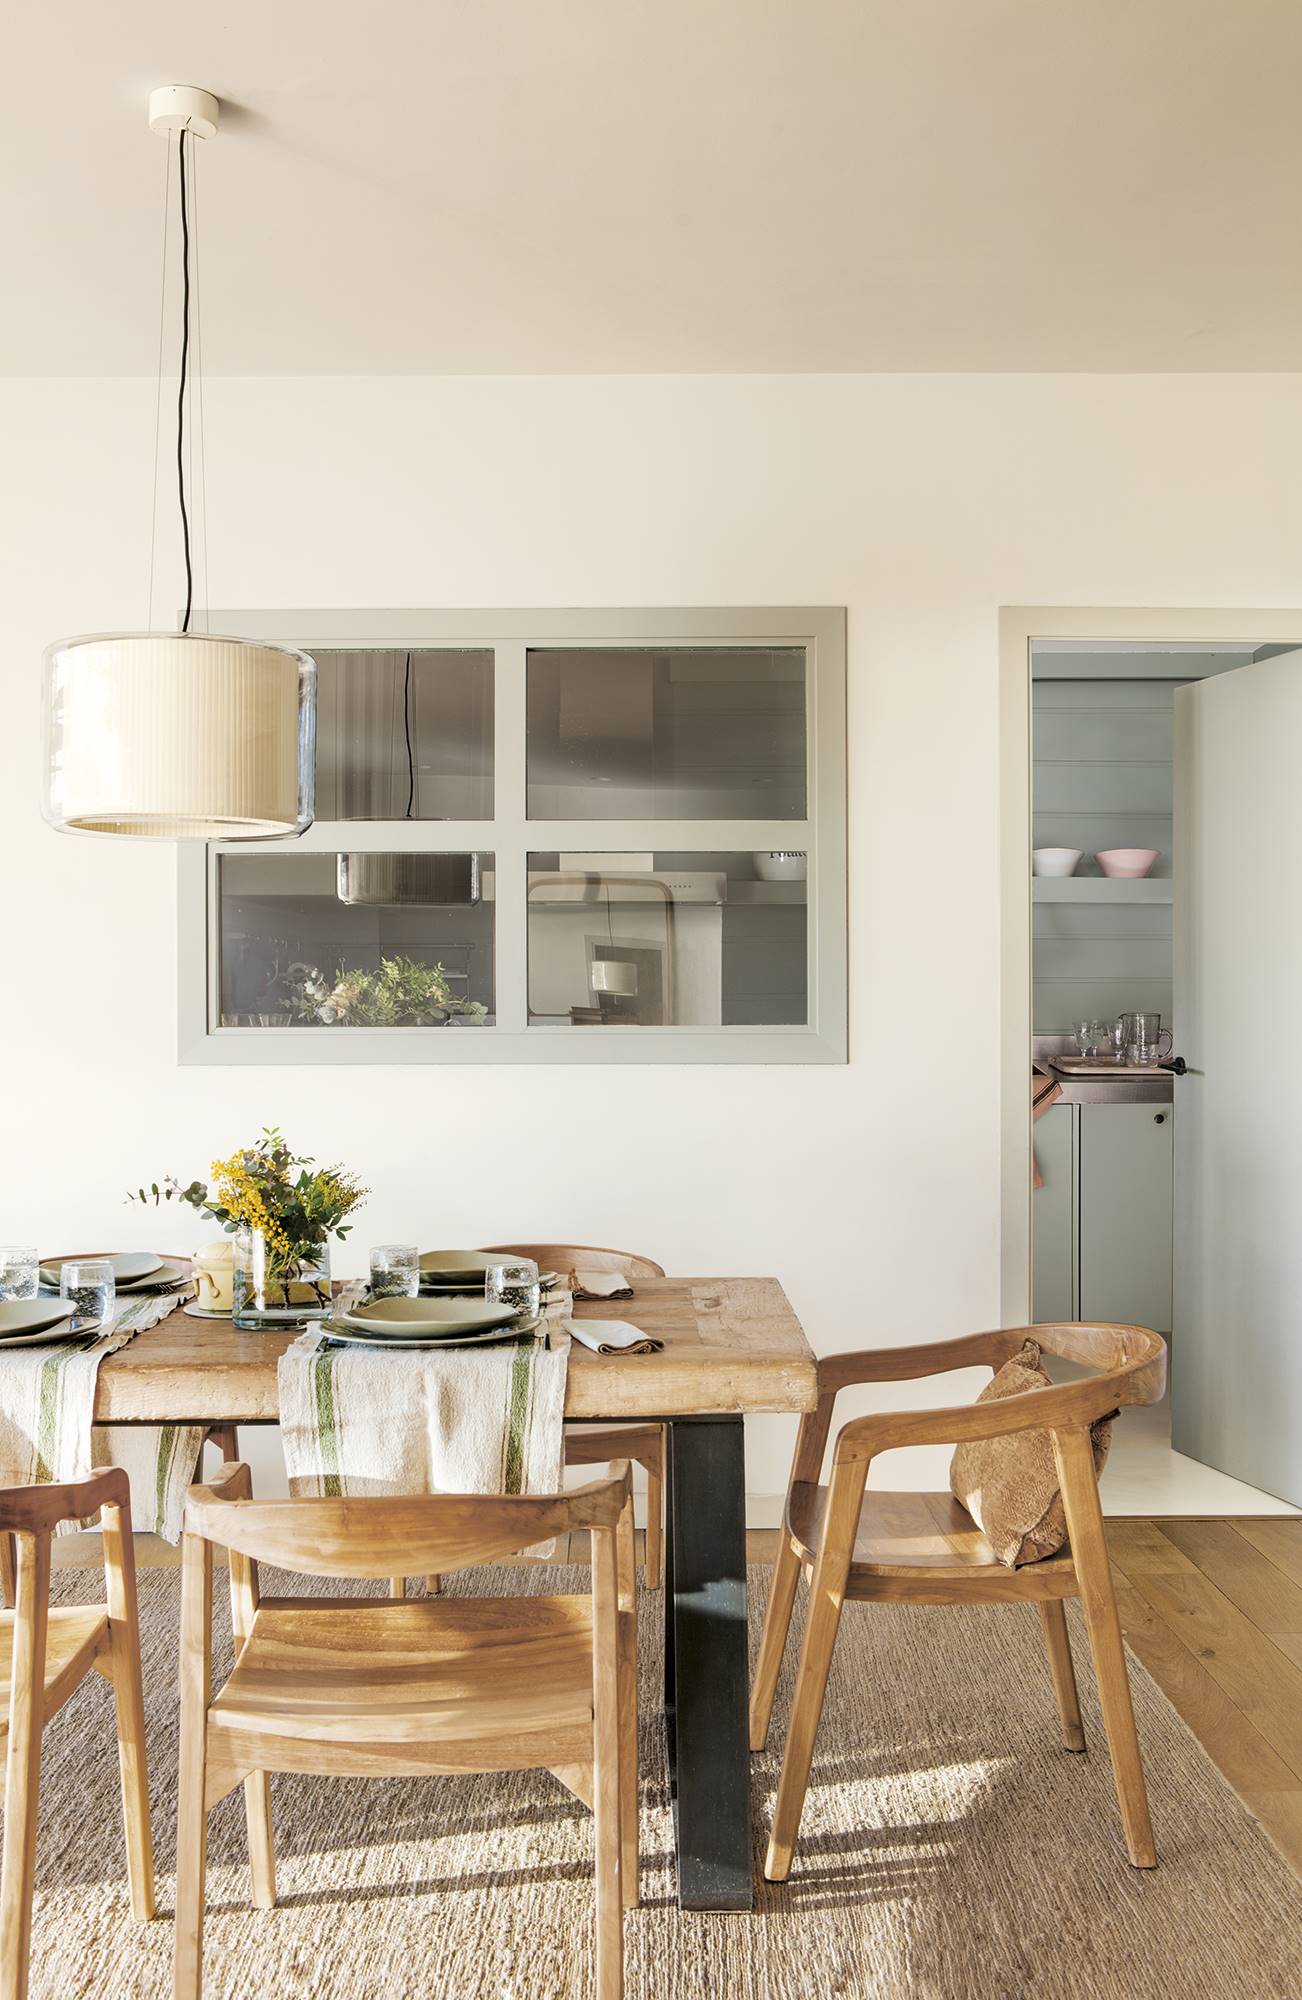 Comedor de estilo rústico industrial comunicado con la cocina a través de una ventana en la pared.